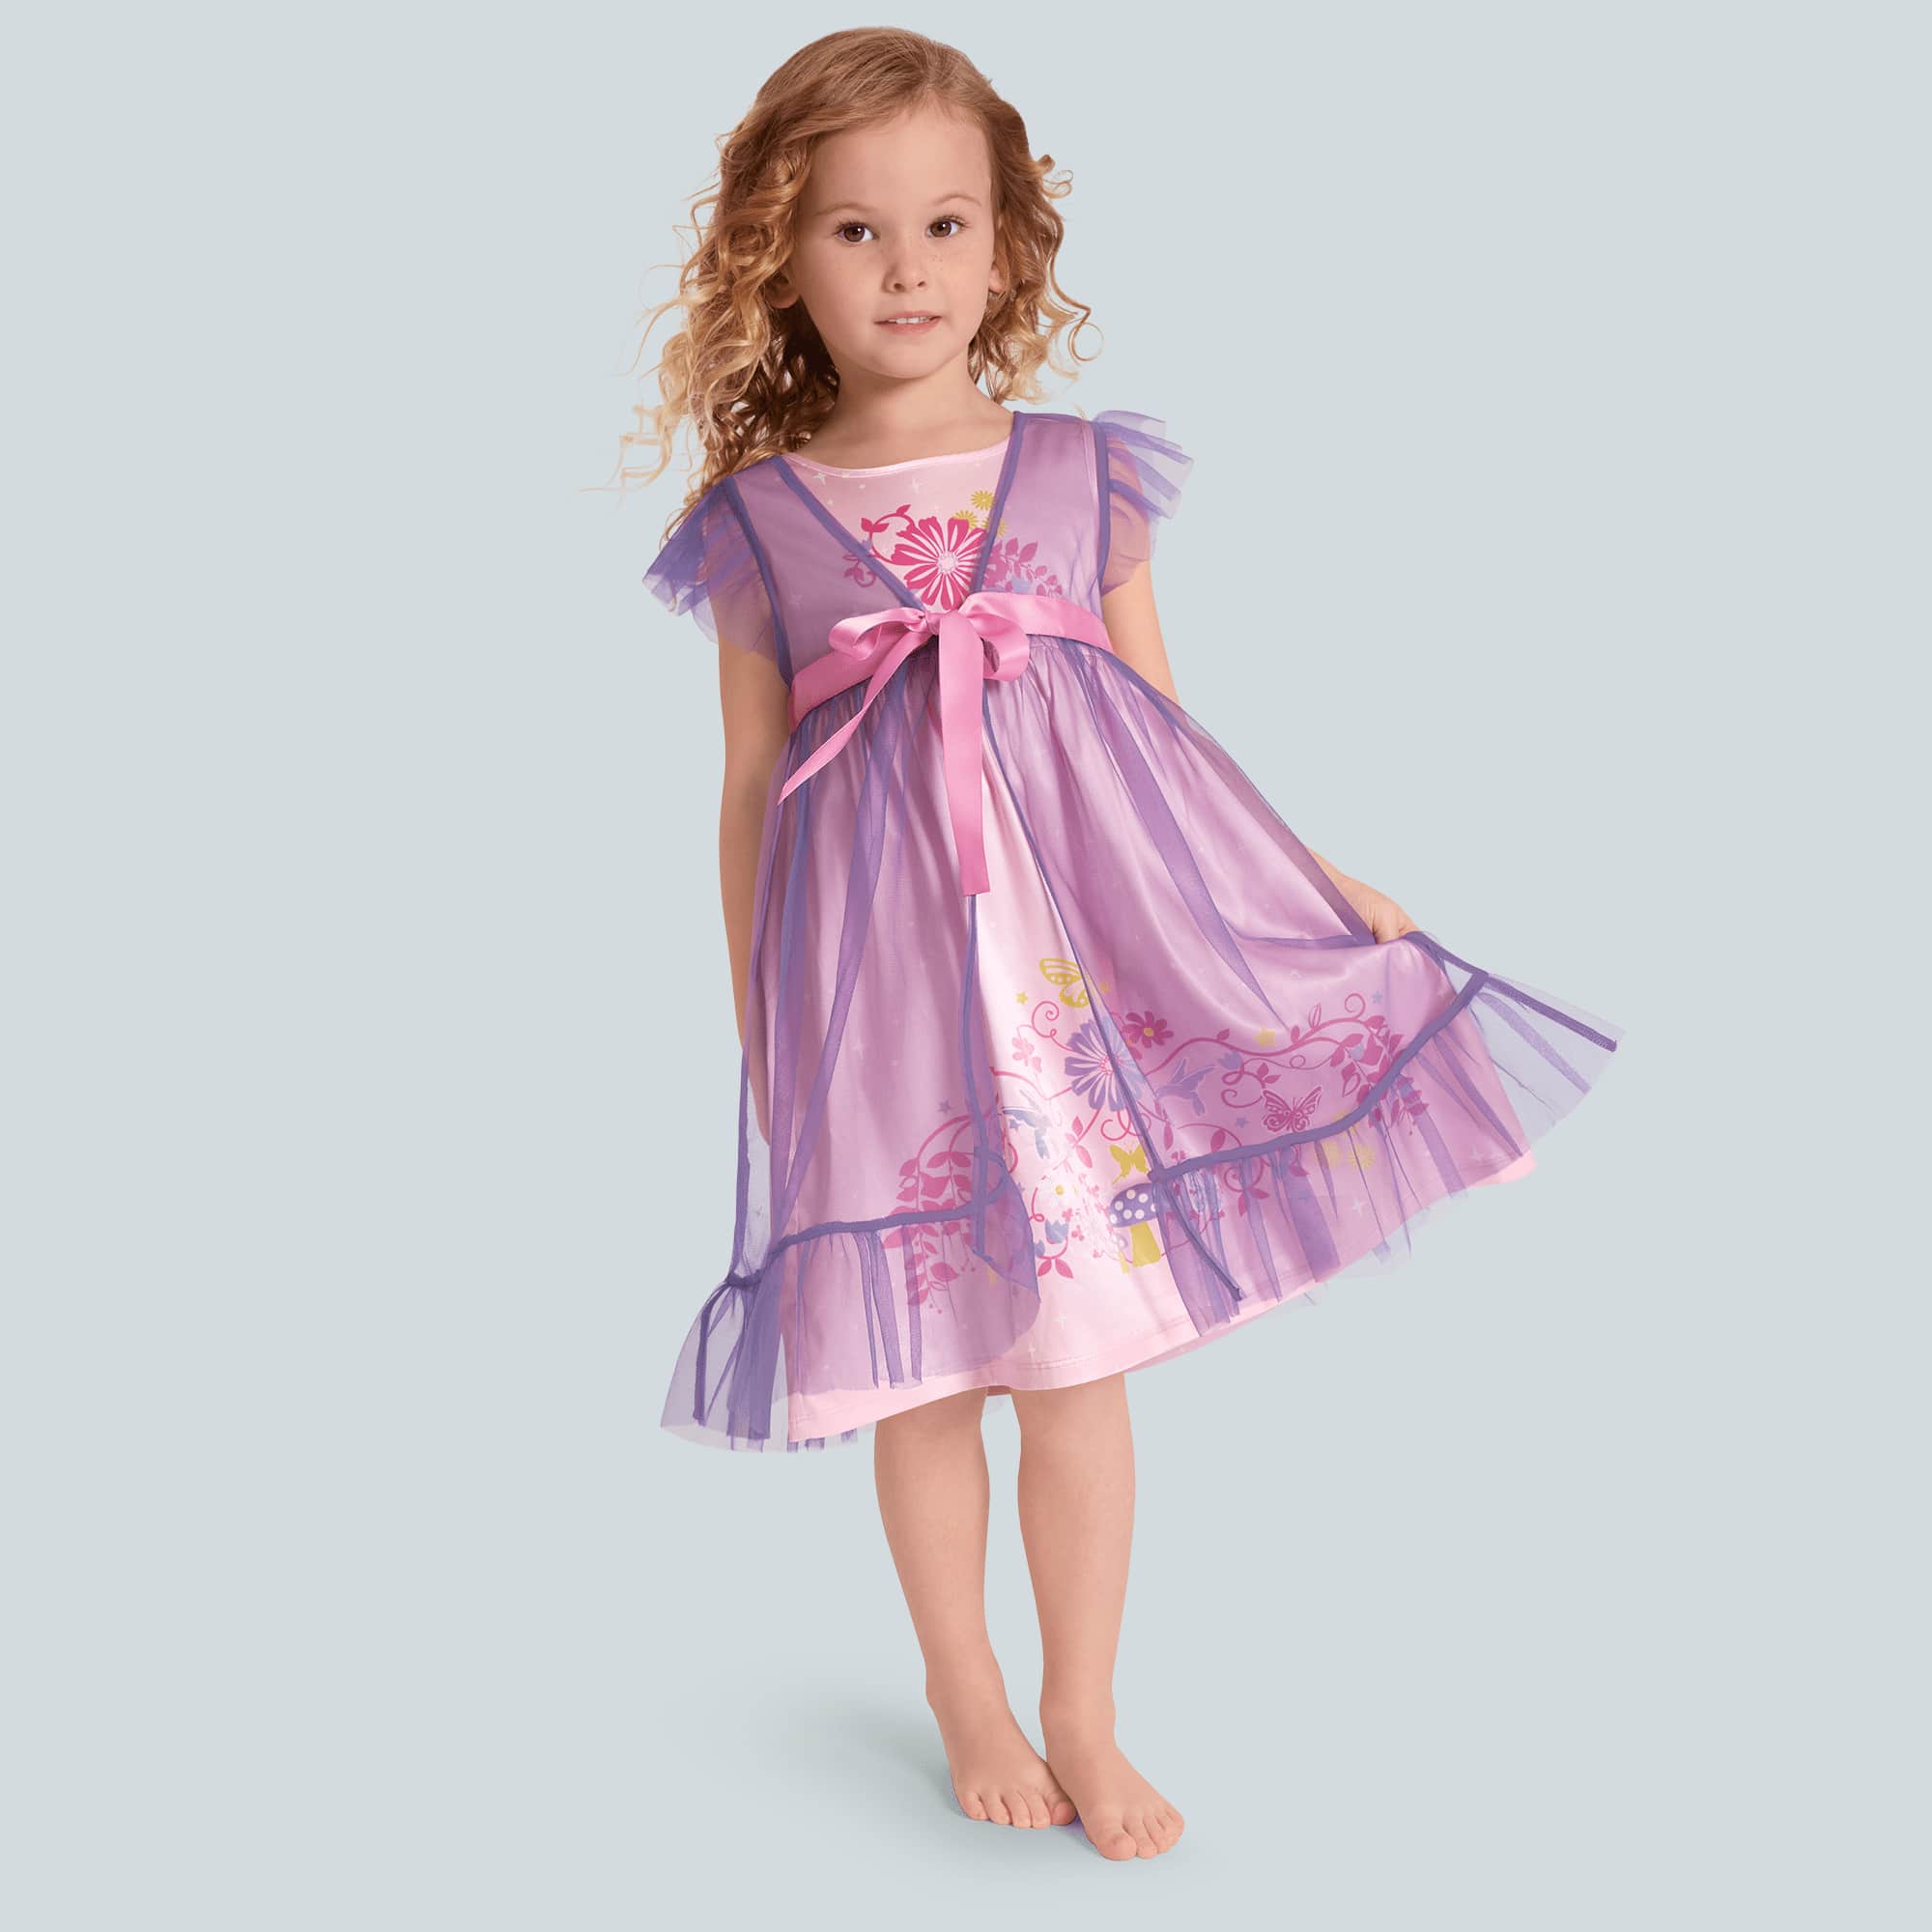 Royal Ruffles Nightie & Robe for Little Girls